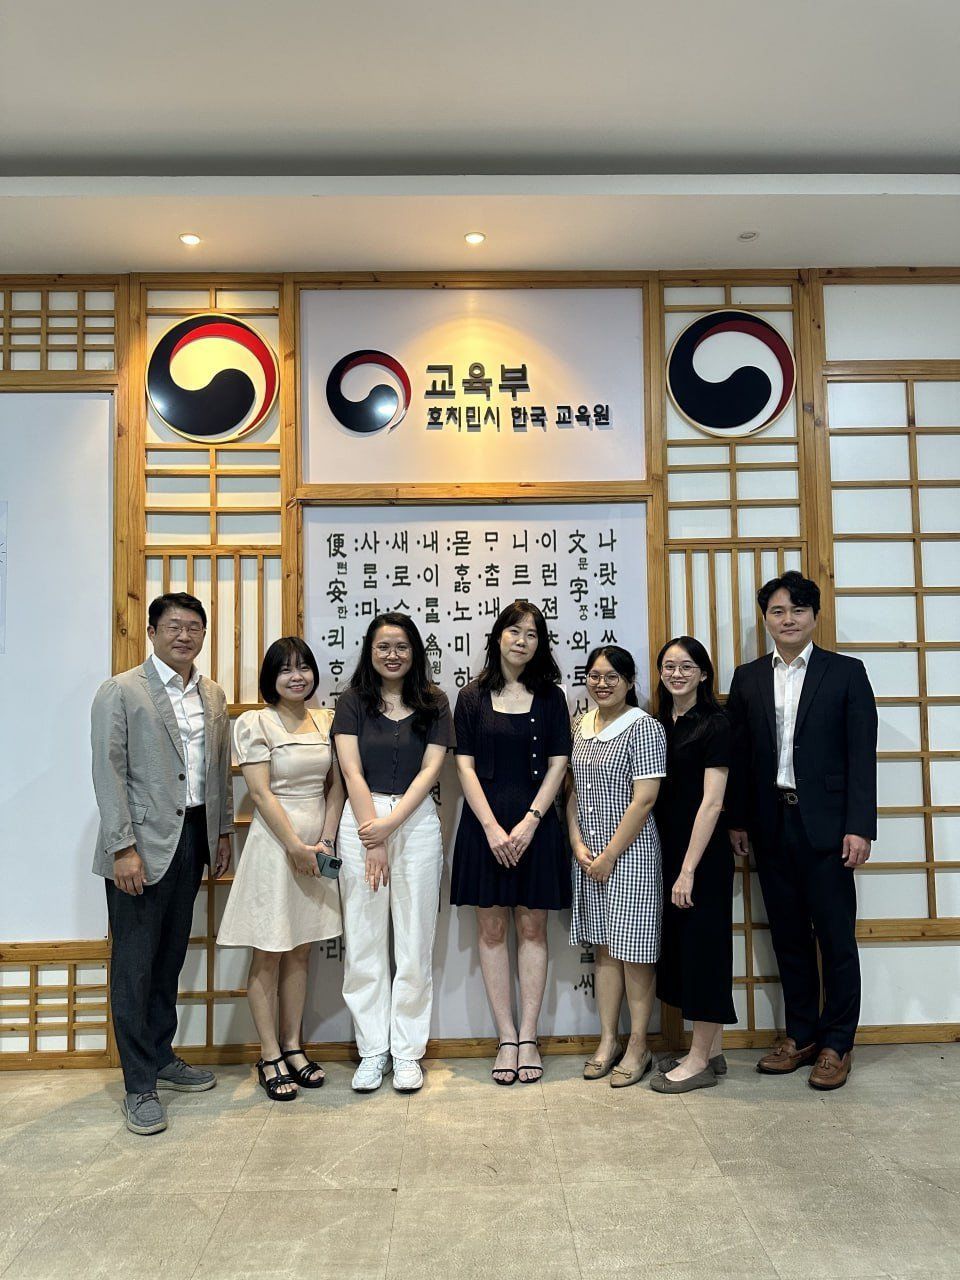 Trung Tâm Ngôn Ngữ tiếng Hàn tại TP. Hồ Chí Minh mở rộng phạm vi hoạt động giáo dục tiếng Hàn - 1